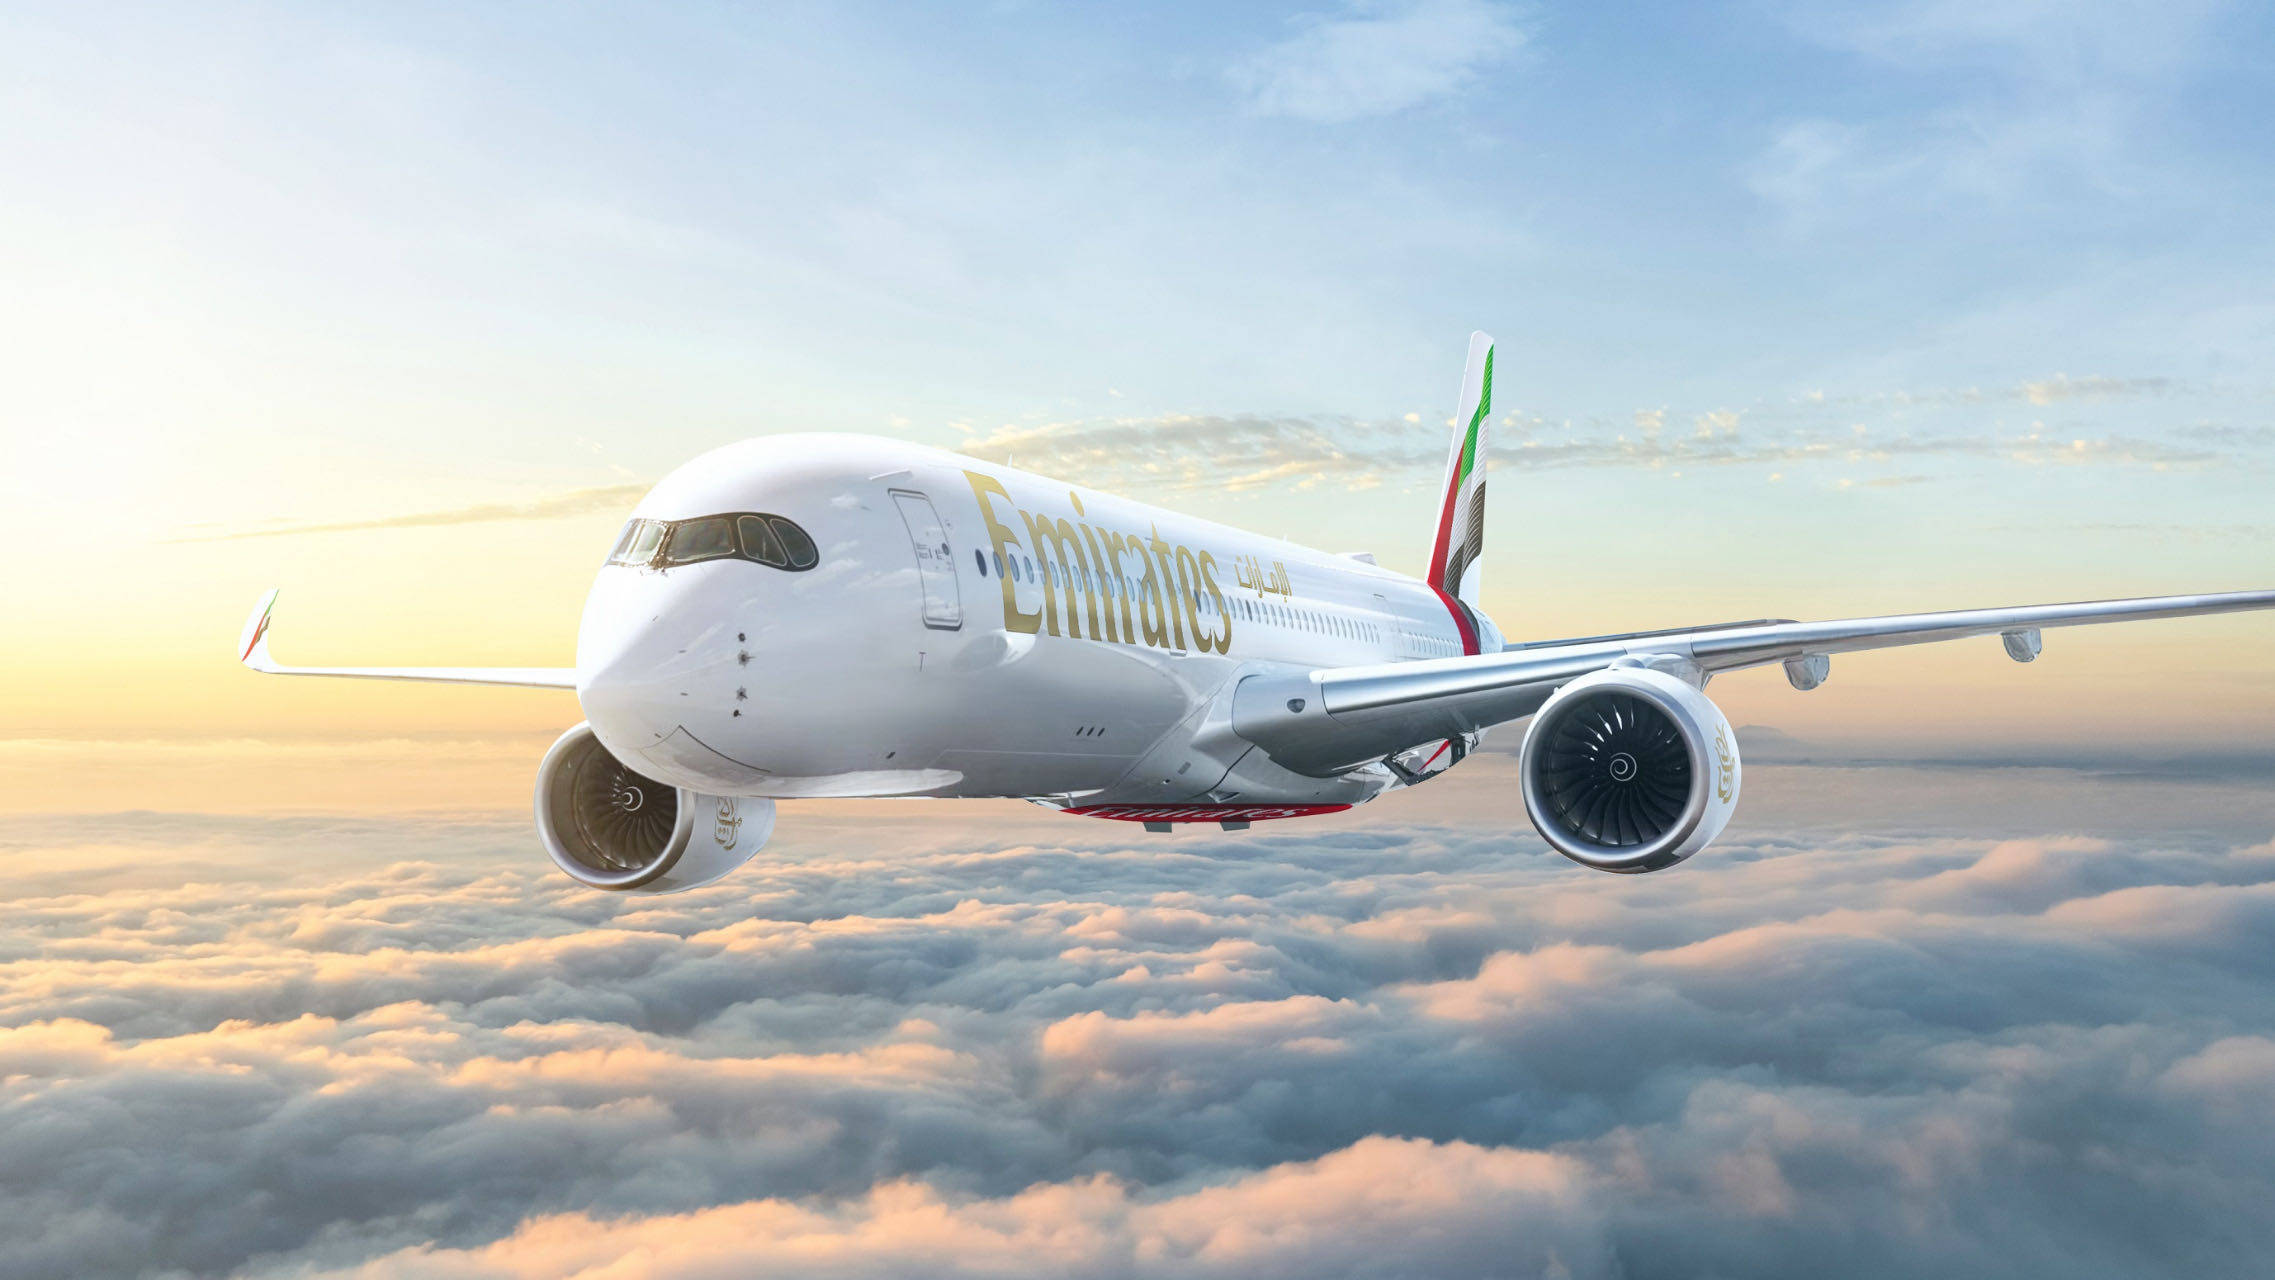   阿联酋航空空将重启迪拜至爱丁堡的每日航班，使用A350客机执飞。